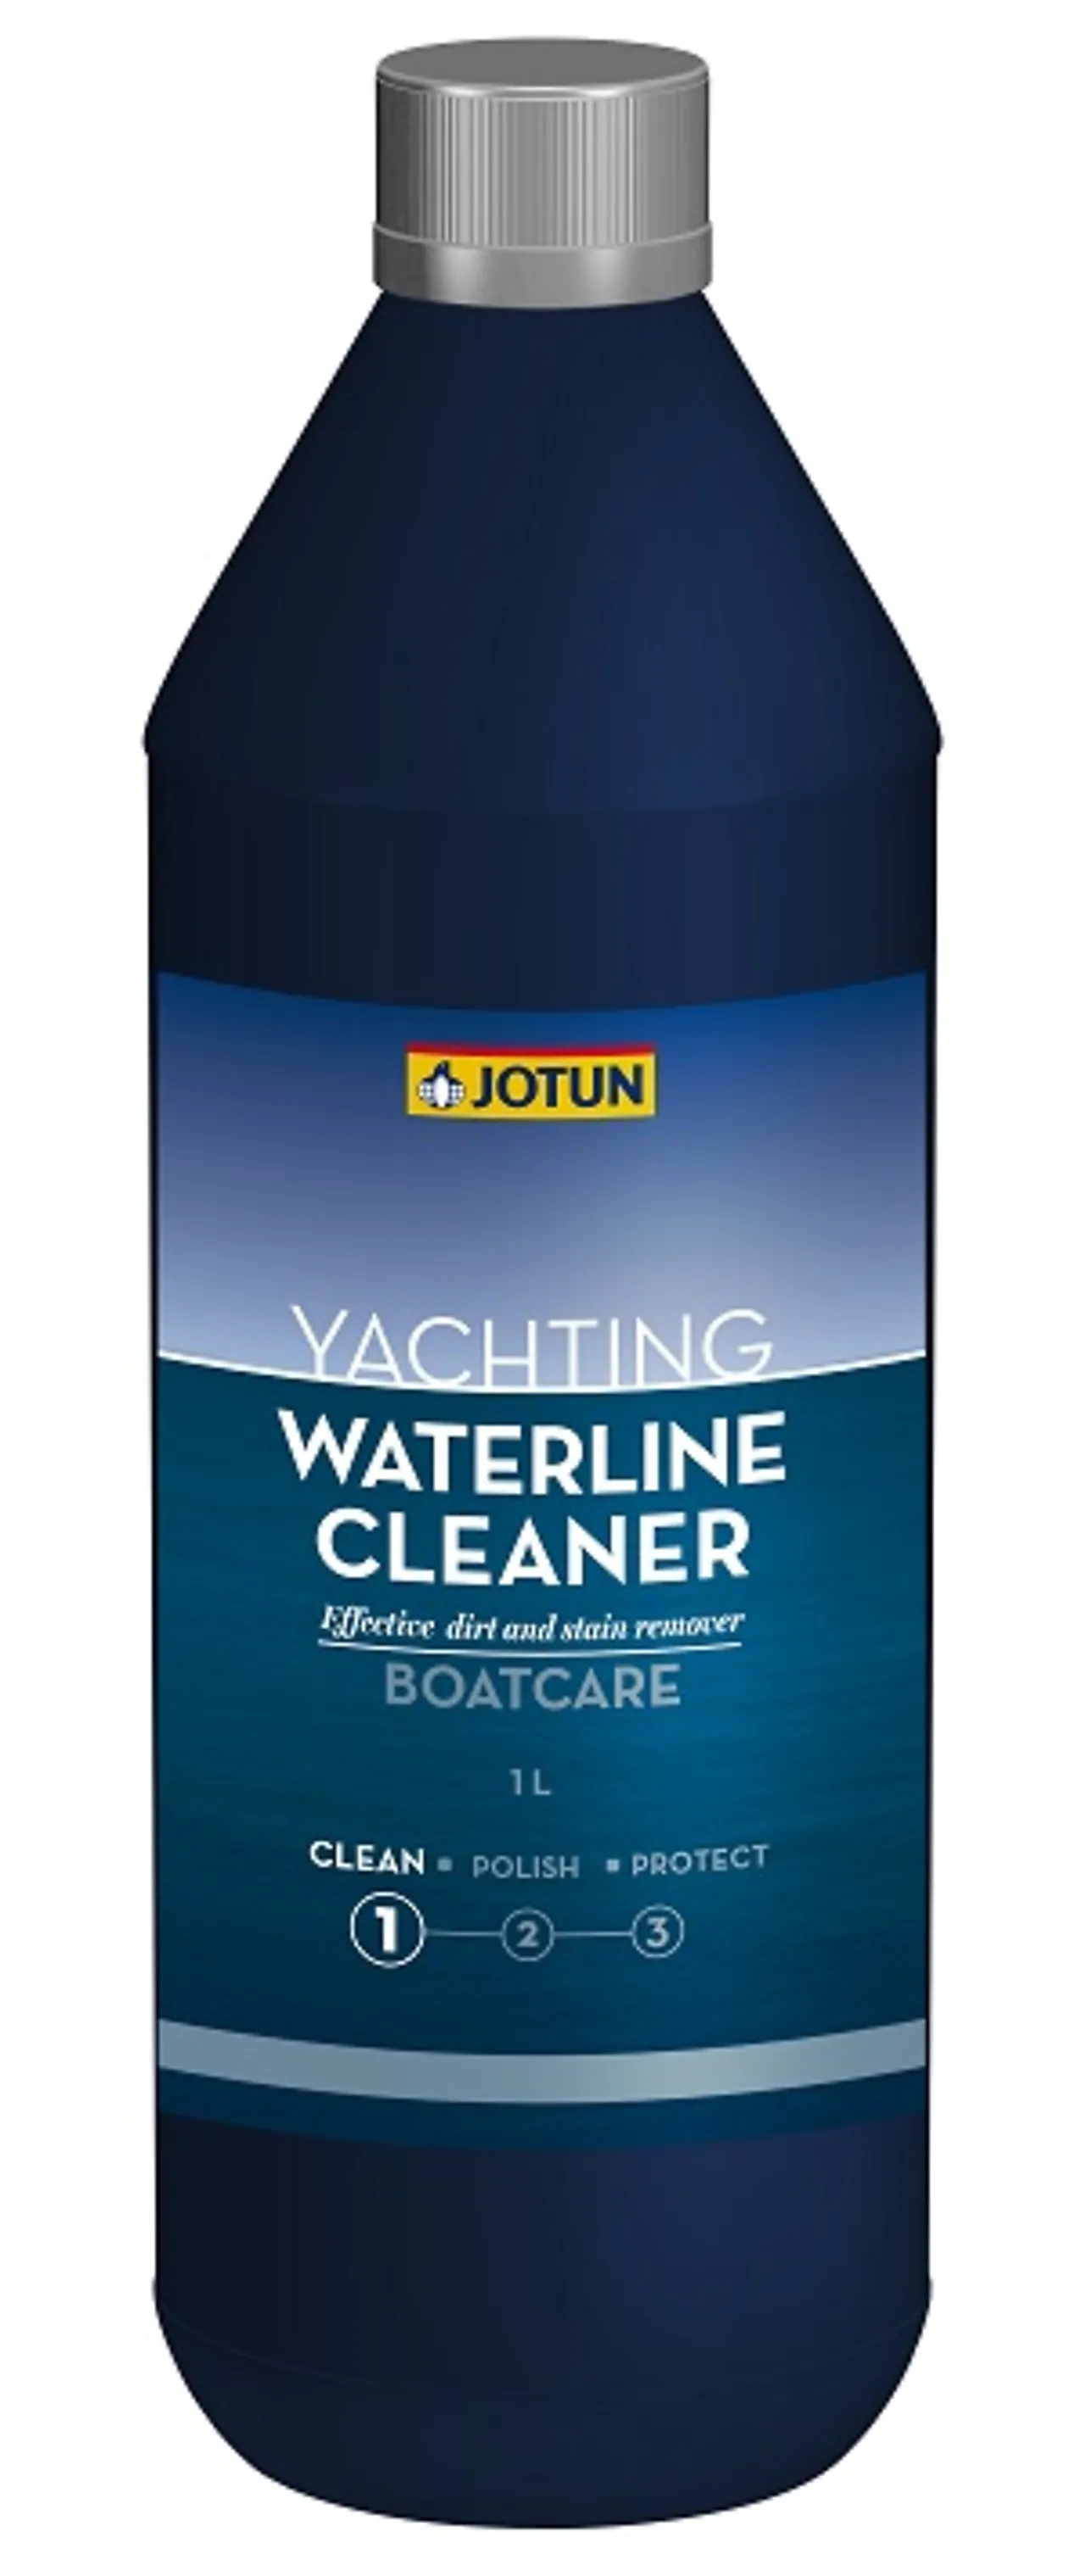 Jotun waterline cleaner 1l